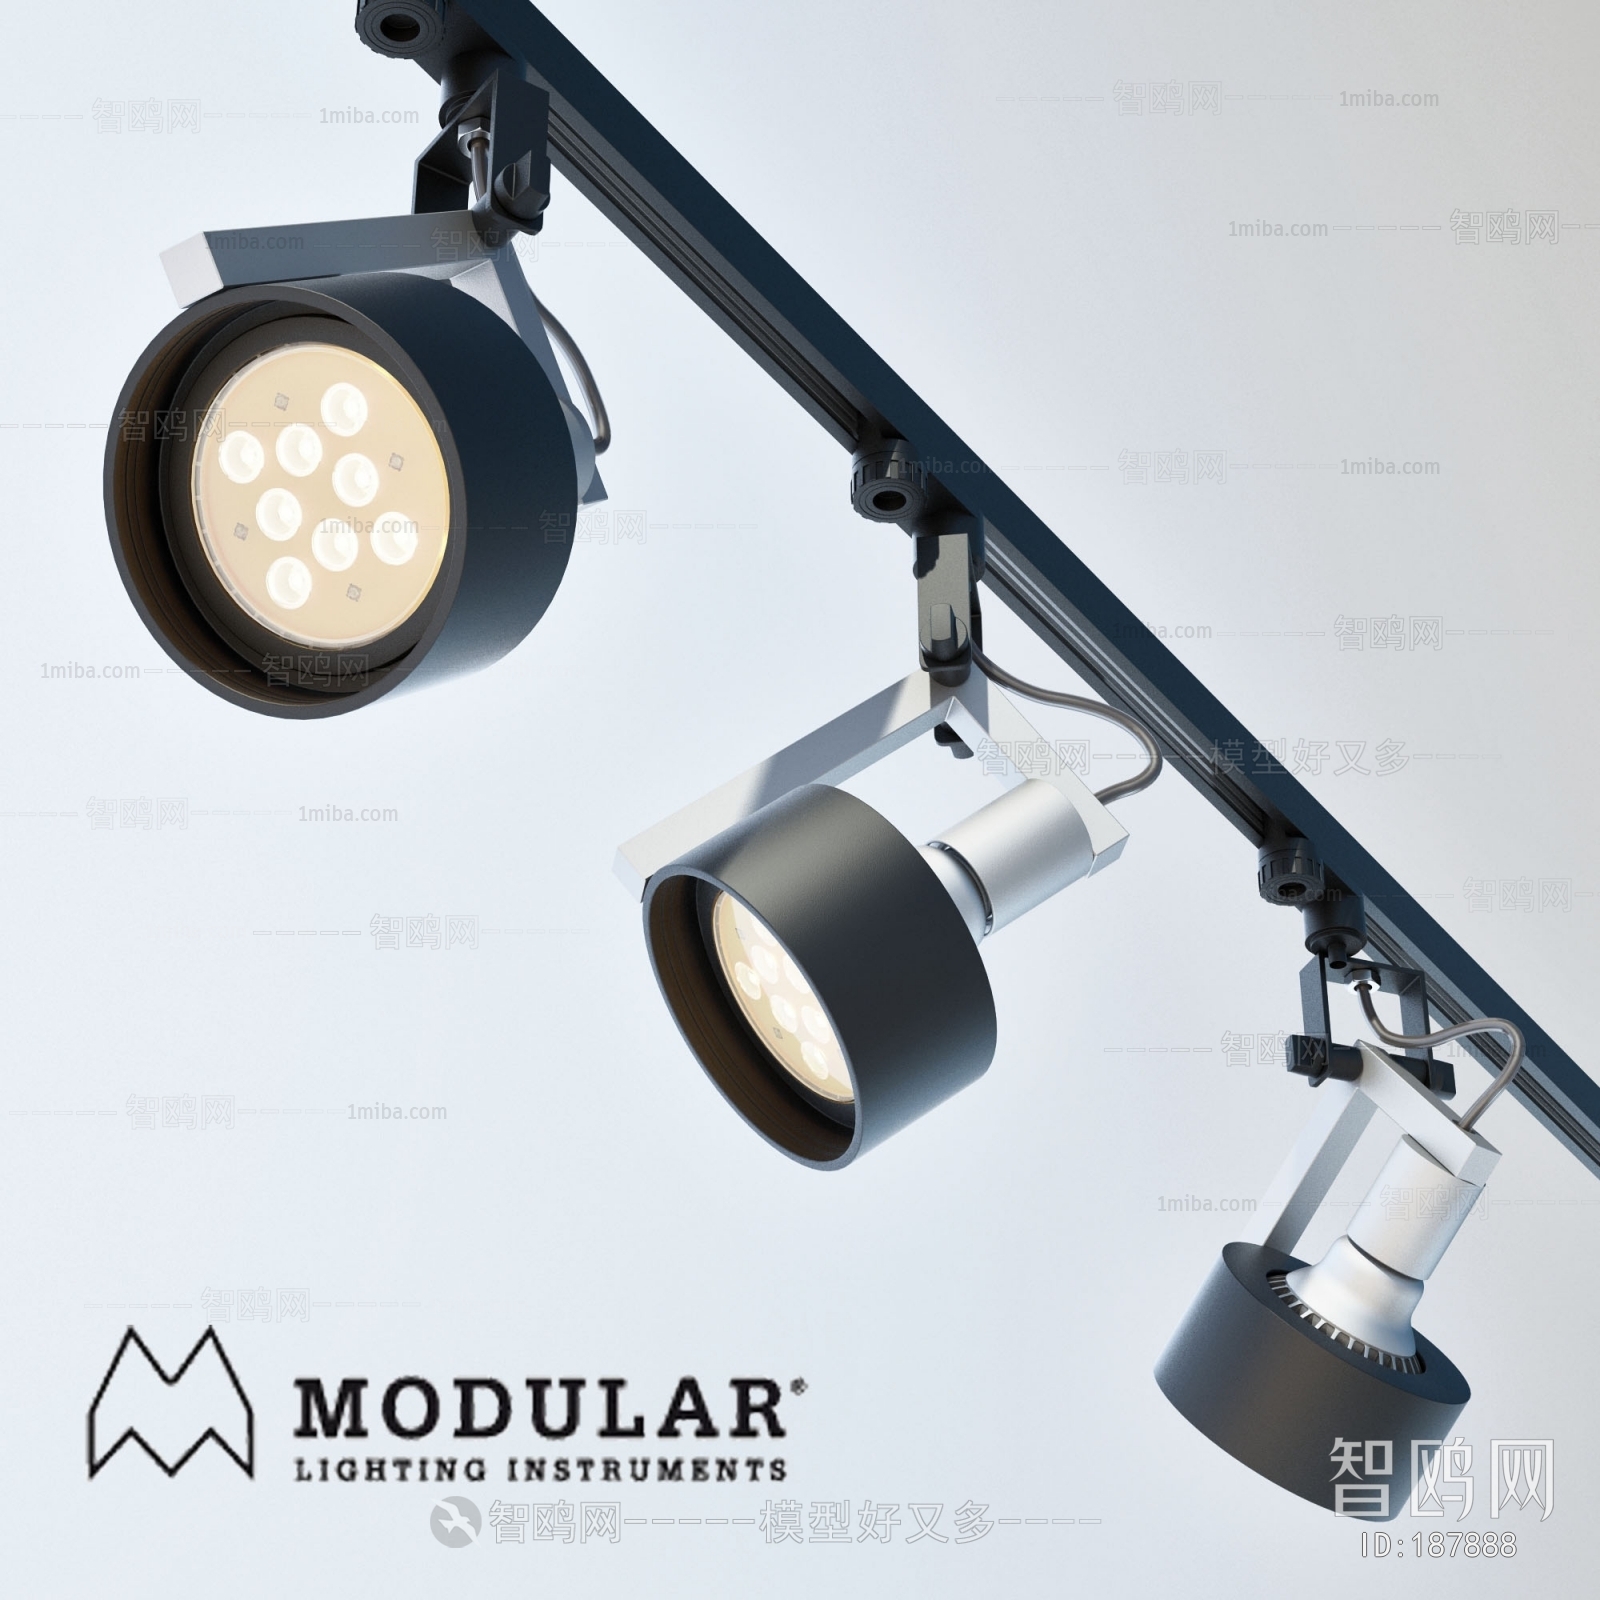 Modern Spotlights